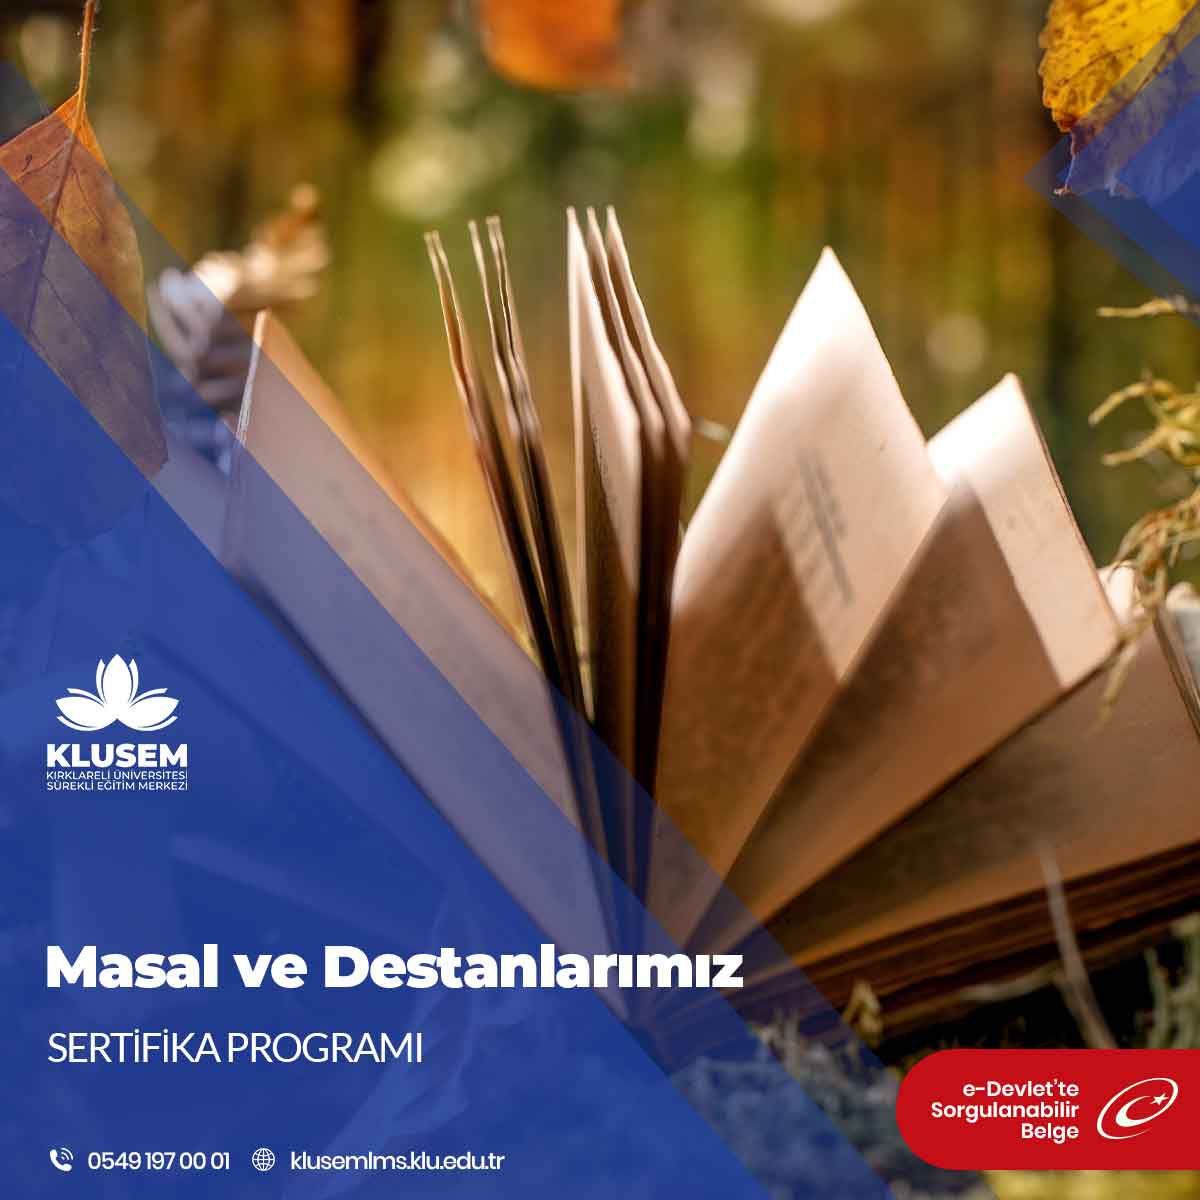 Masal ve destanlar, Türk kültürünün zengin bir parçasını oluşturan önemli sözlü geleneğin bir yansımasıdır.